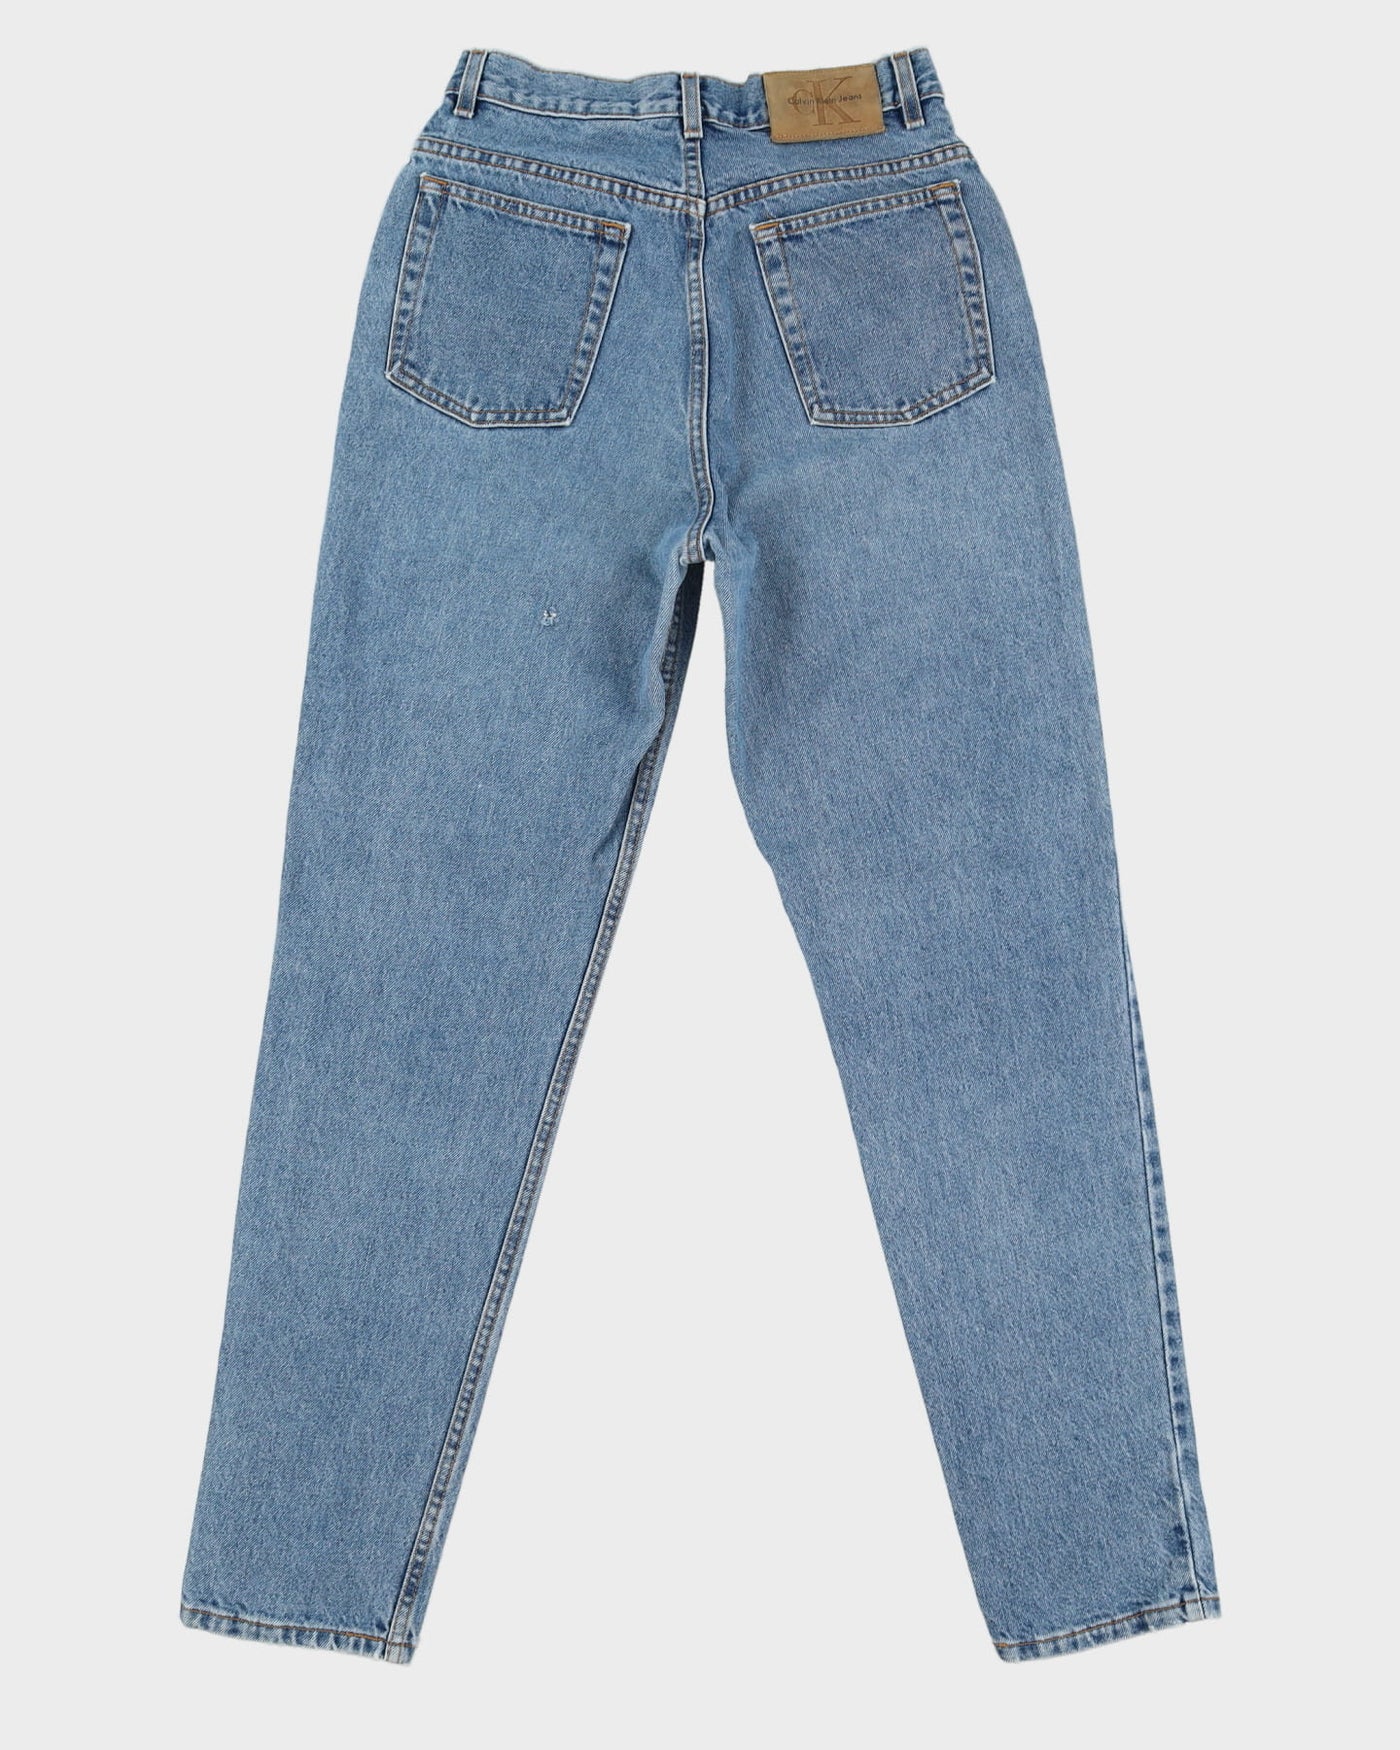 Vintage 90s Calvin Klein Light Wash Blue Jeans - W27 L32